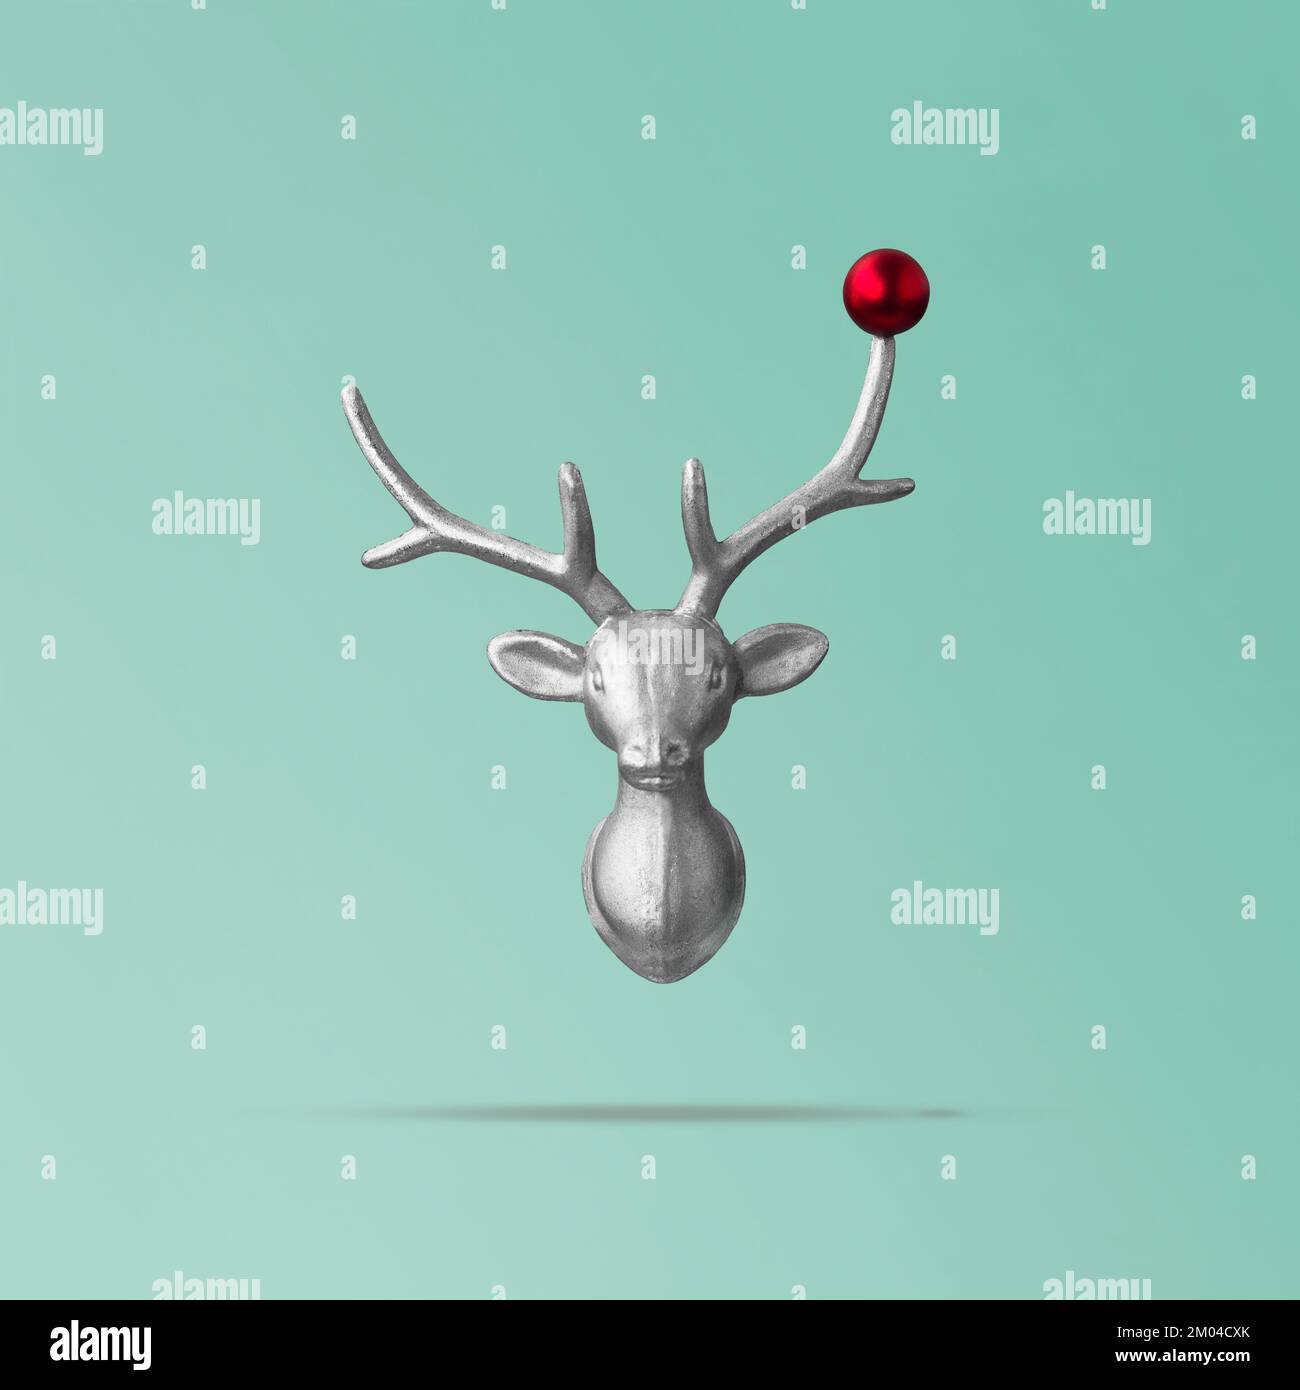 Concetto di renna di Natale su sfondo teal fatto di testa di renna e rosso bauble. Idea di vacanza invernale minima, concetto di nuovo anno Foto Stock